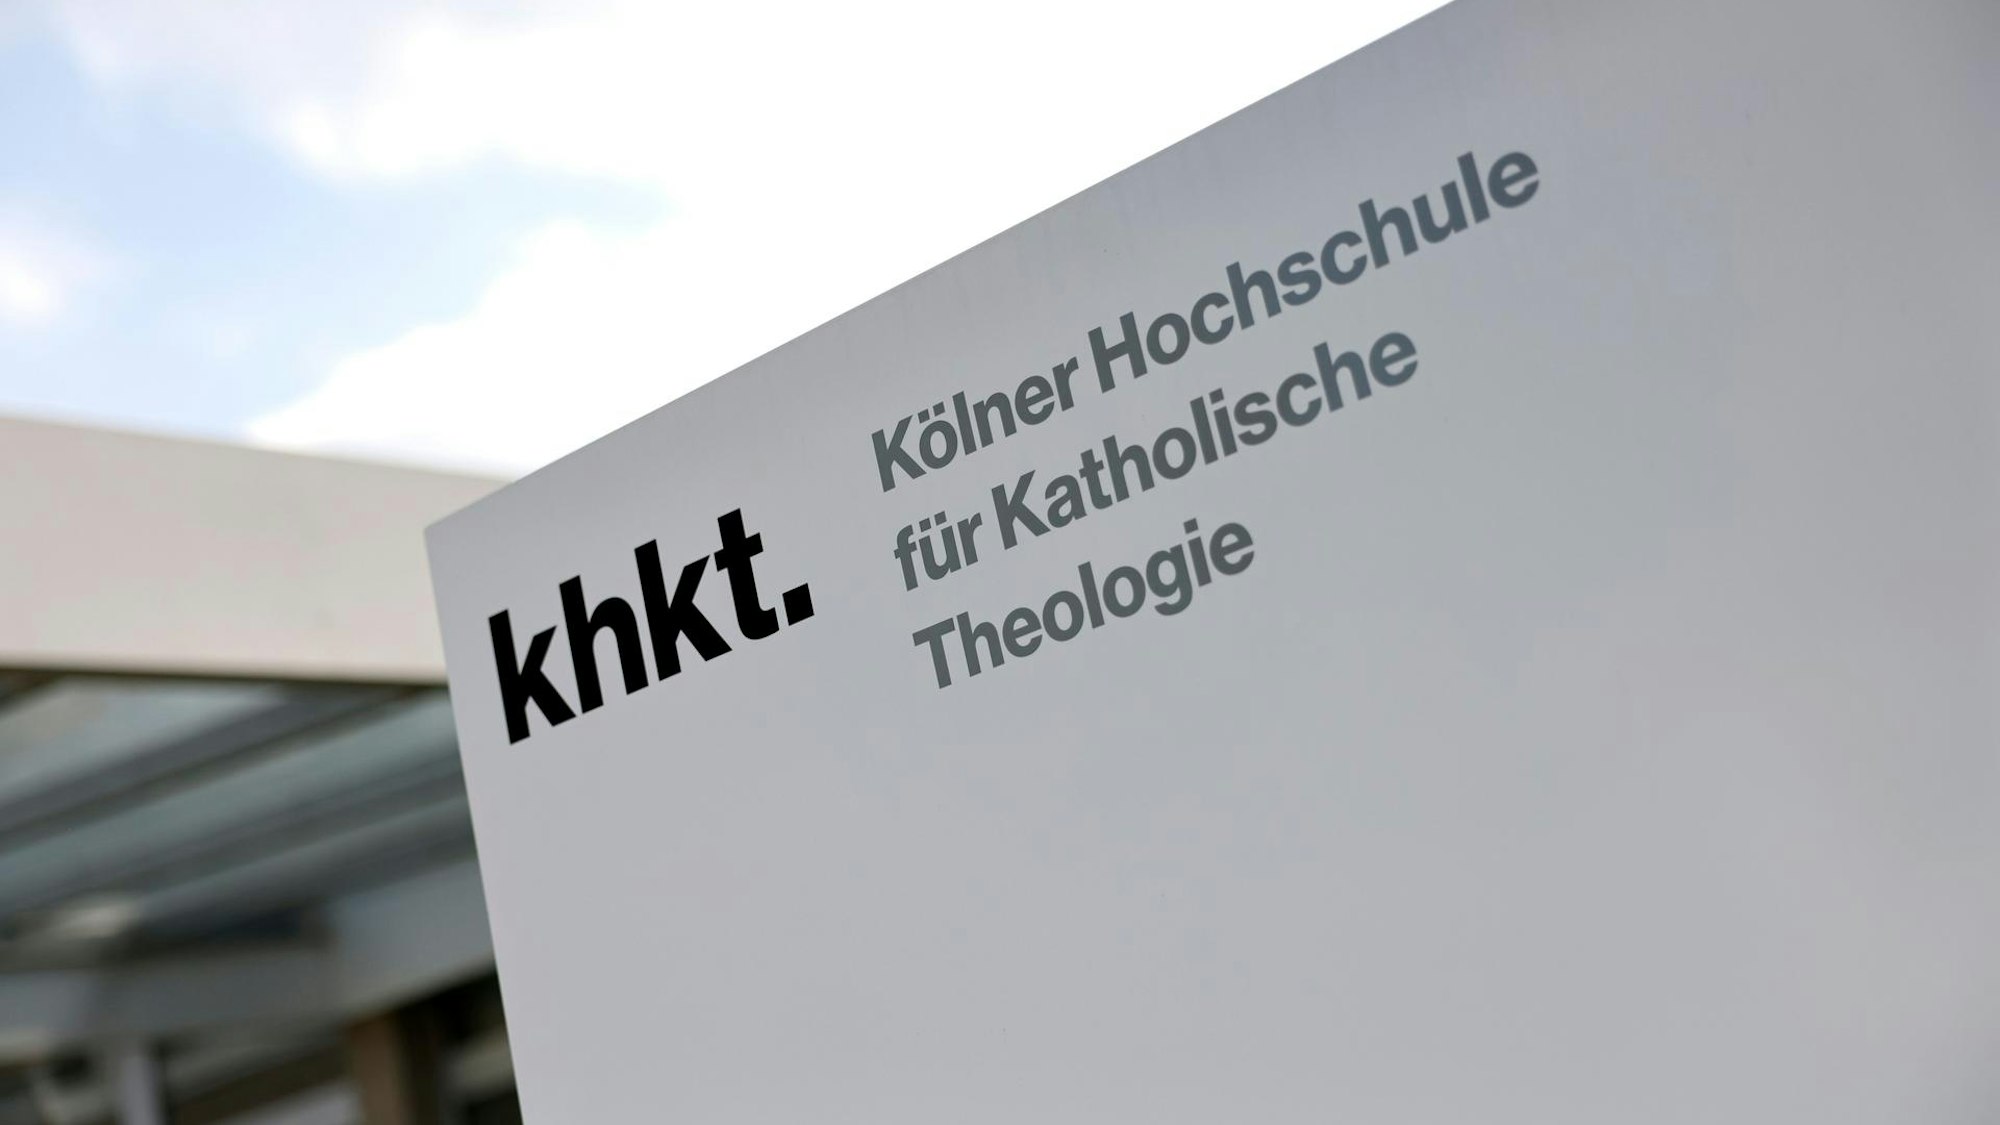 Die Kölner Hochschule für Katholische Theologie